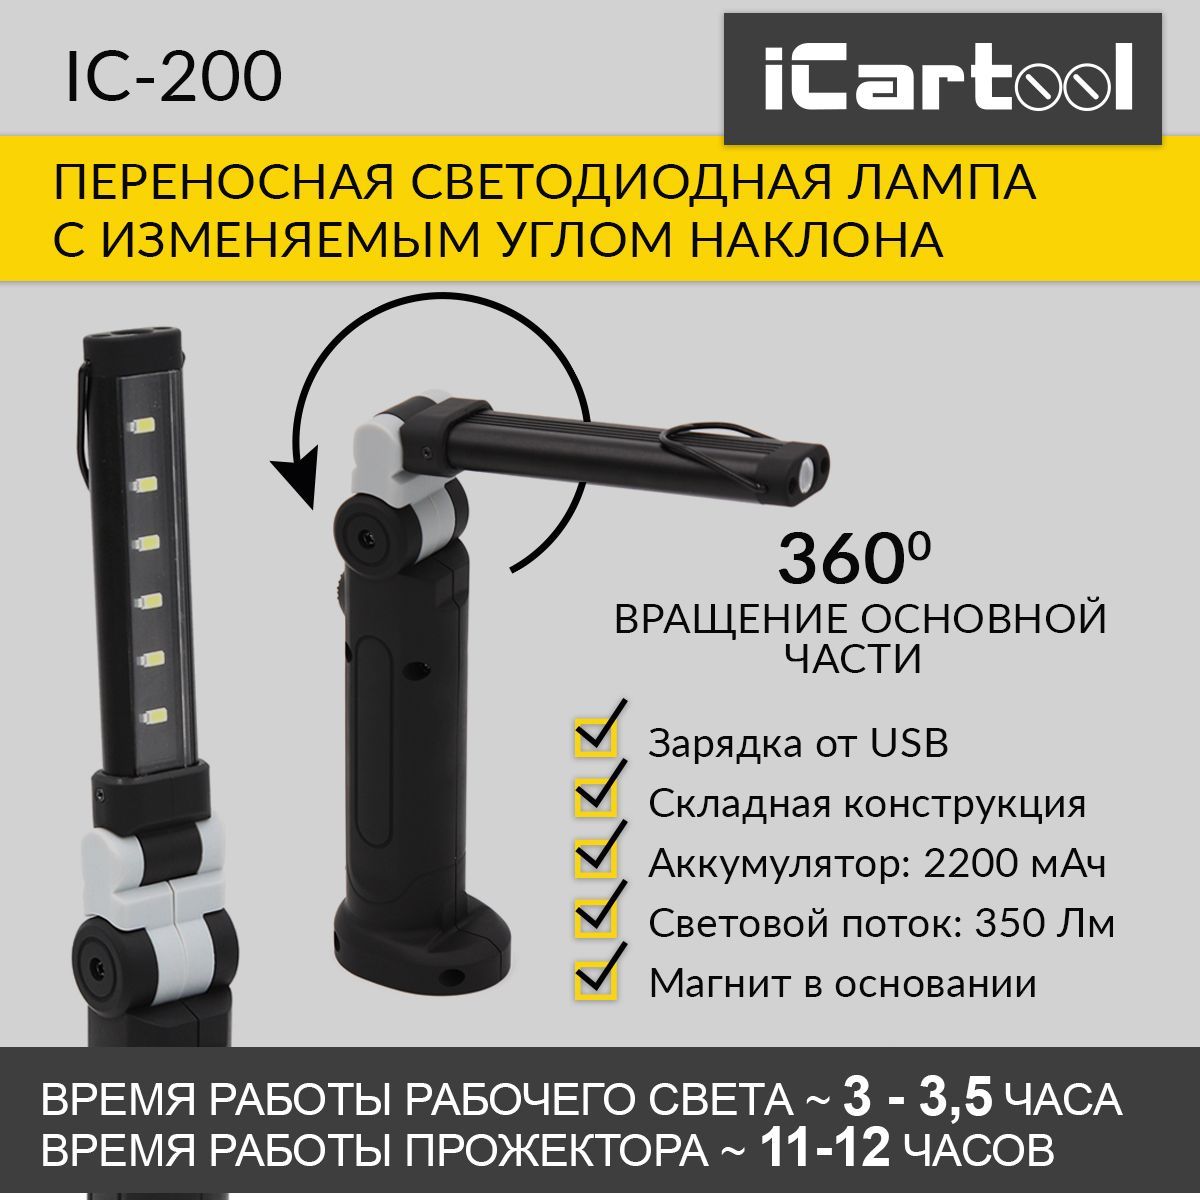 Переносная светодиодная лампа с изменяемым углом наклона iCartool IC-200 многофункциональное пуско зарядное устройство для автомобиля icartool